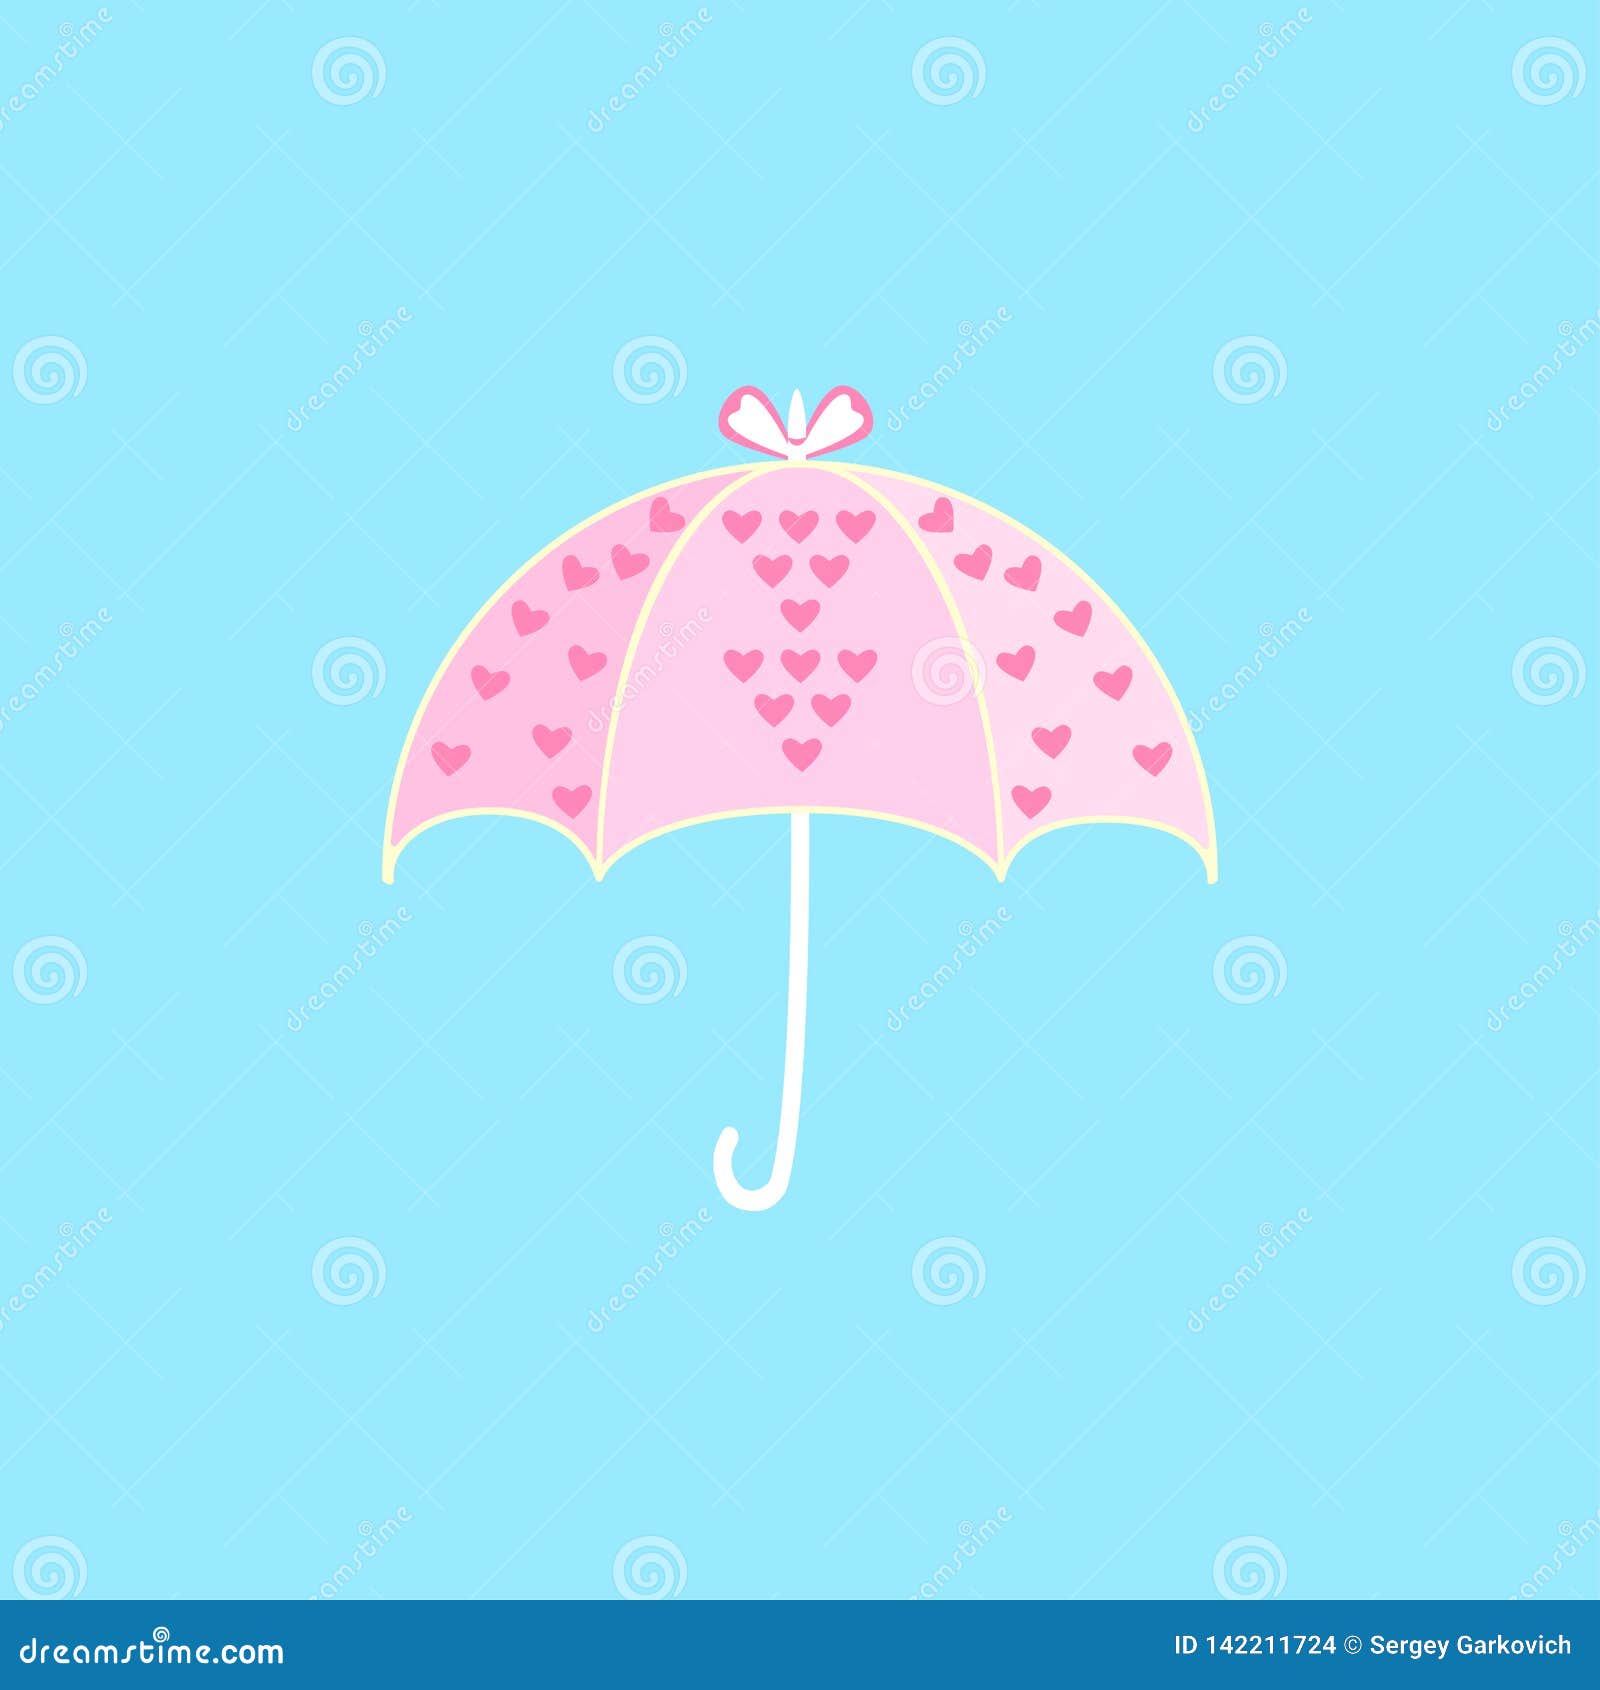 Hãy cùng đến với chiếc ô màu hồng mộc mạc nhưng đầy sắc màu này. Với thiết kế đẹp mắt và màu sắc tươi sáng, chiếc ô này sẽ khiến bạn thích thú và muốn có ngay và luôn. Xem hình ảnh để cảm nhận được vẻ đẹp của nó thôi nào!